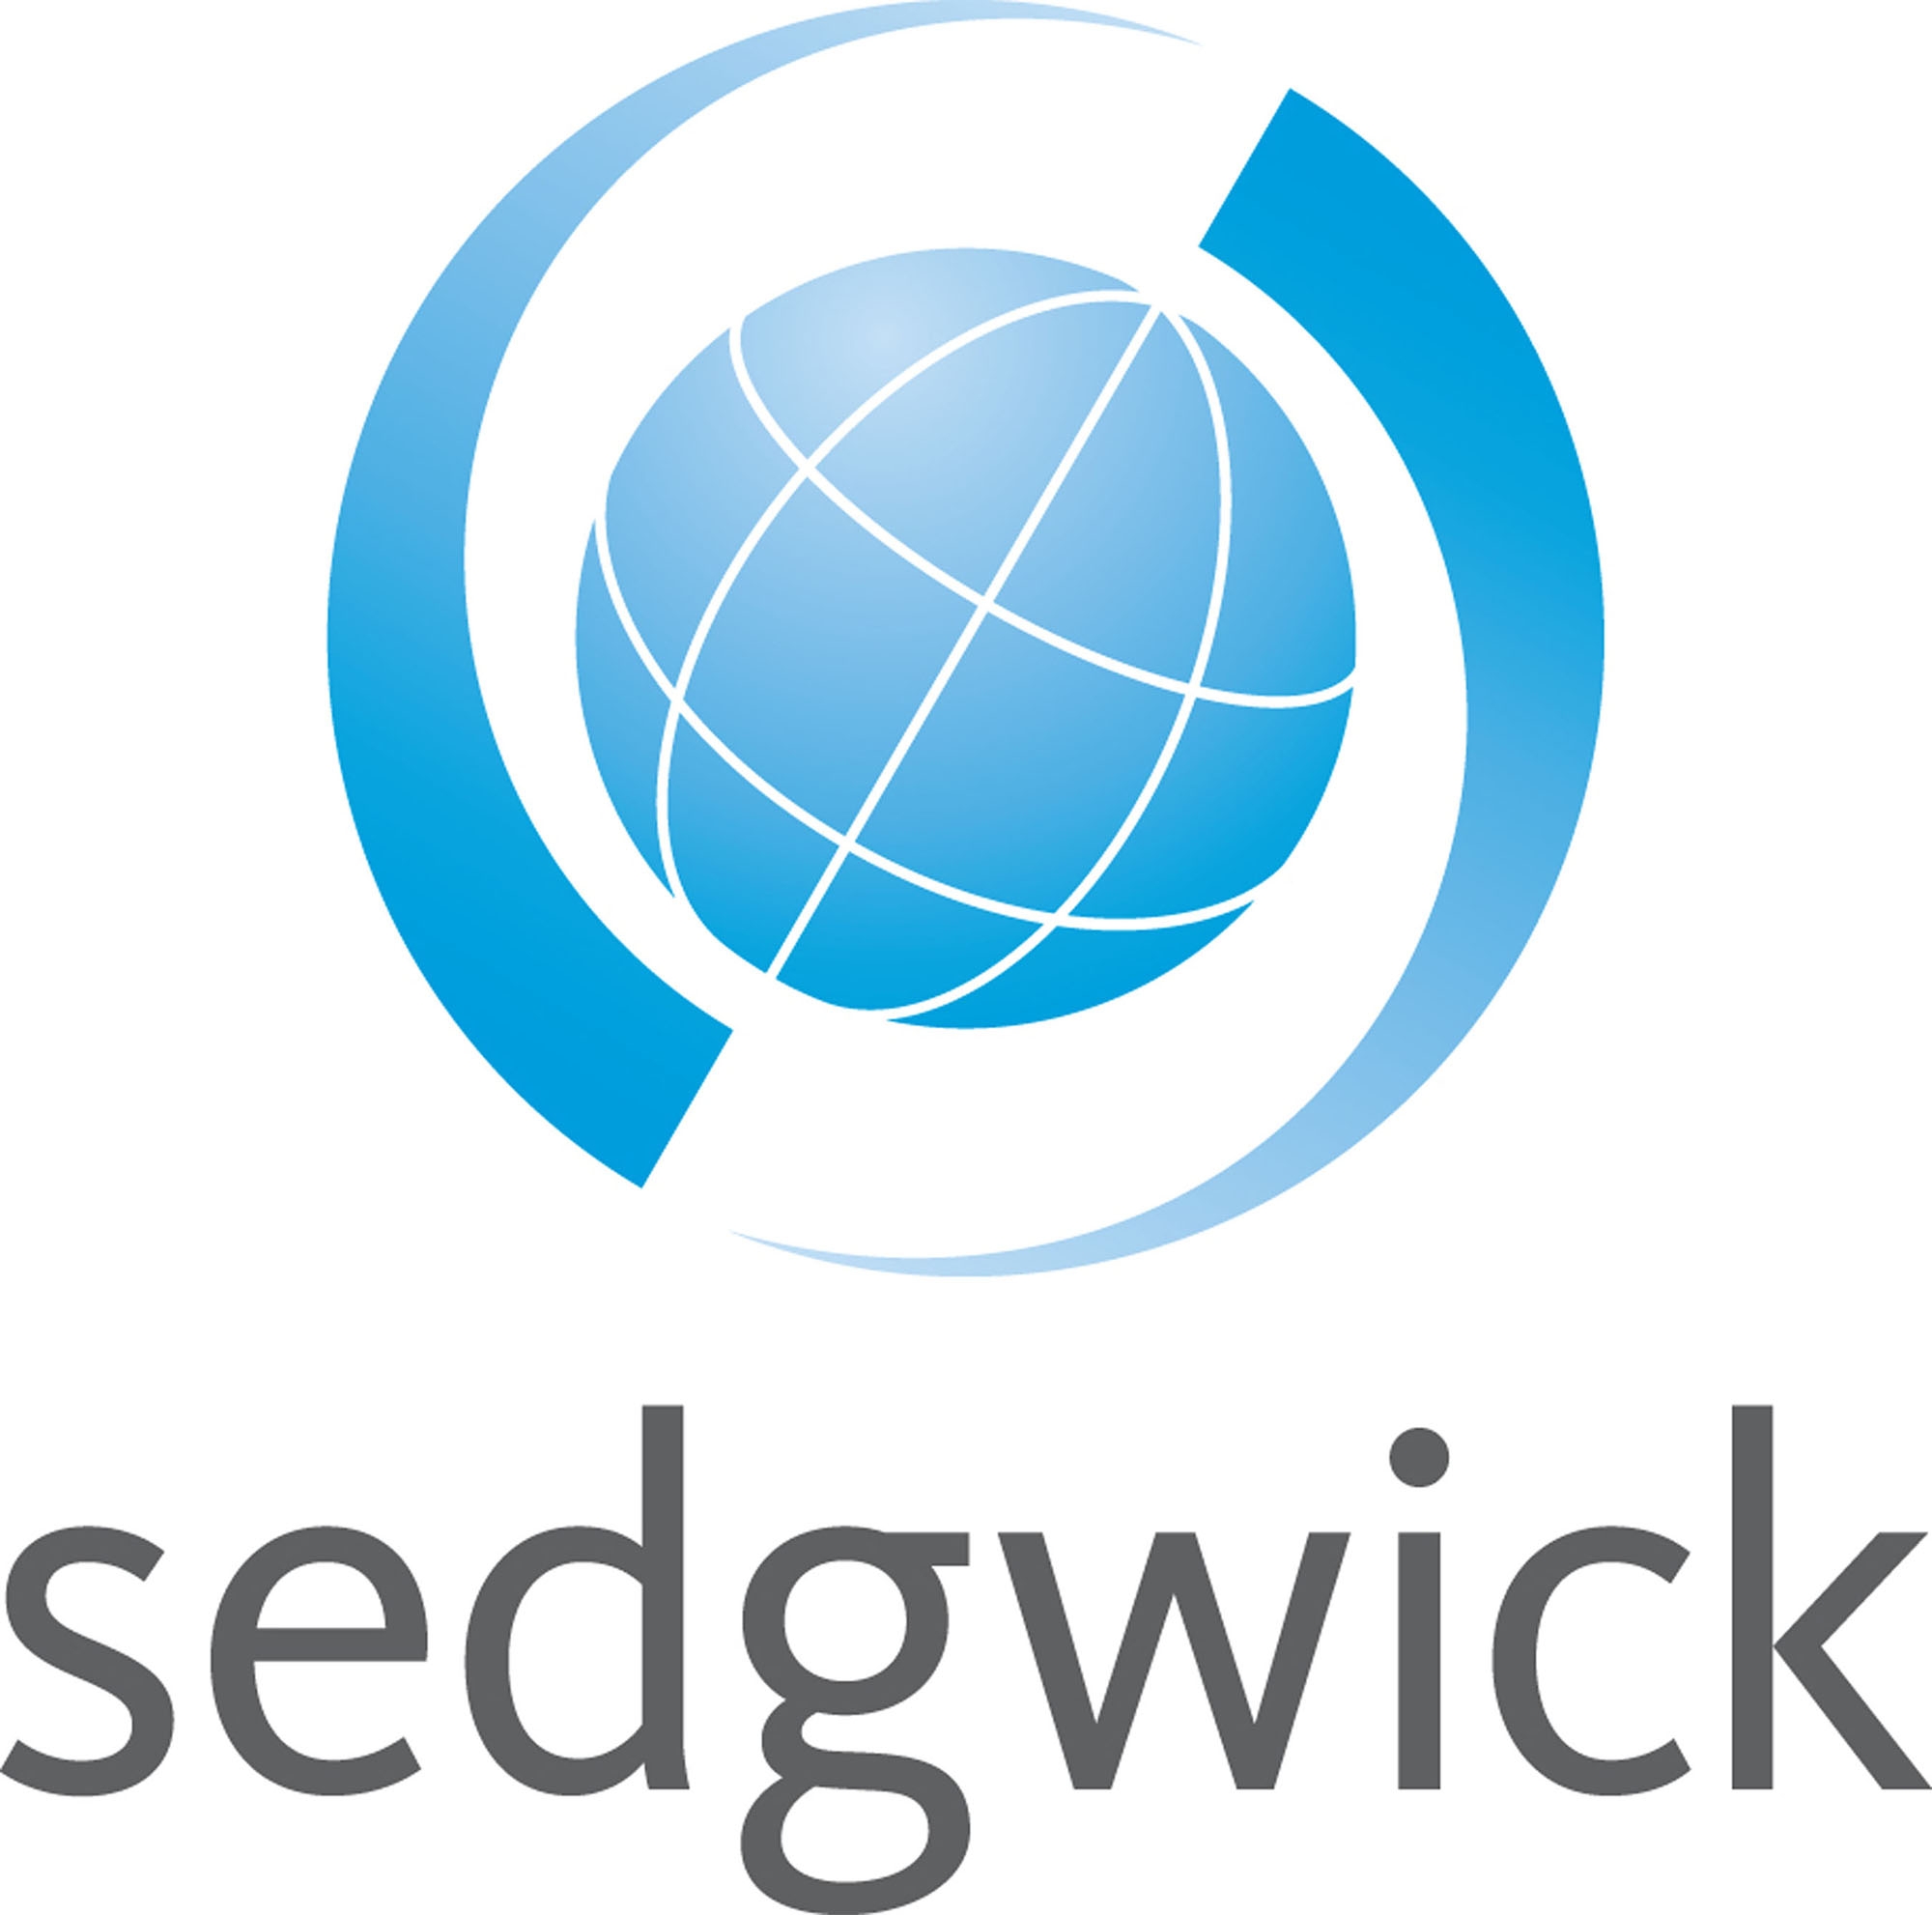 Sedgwick Repair